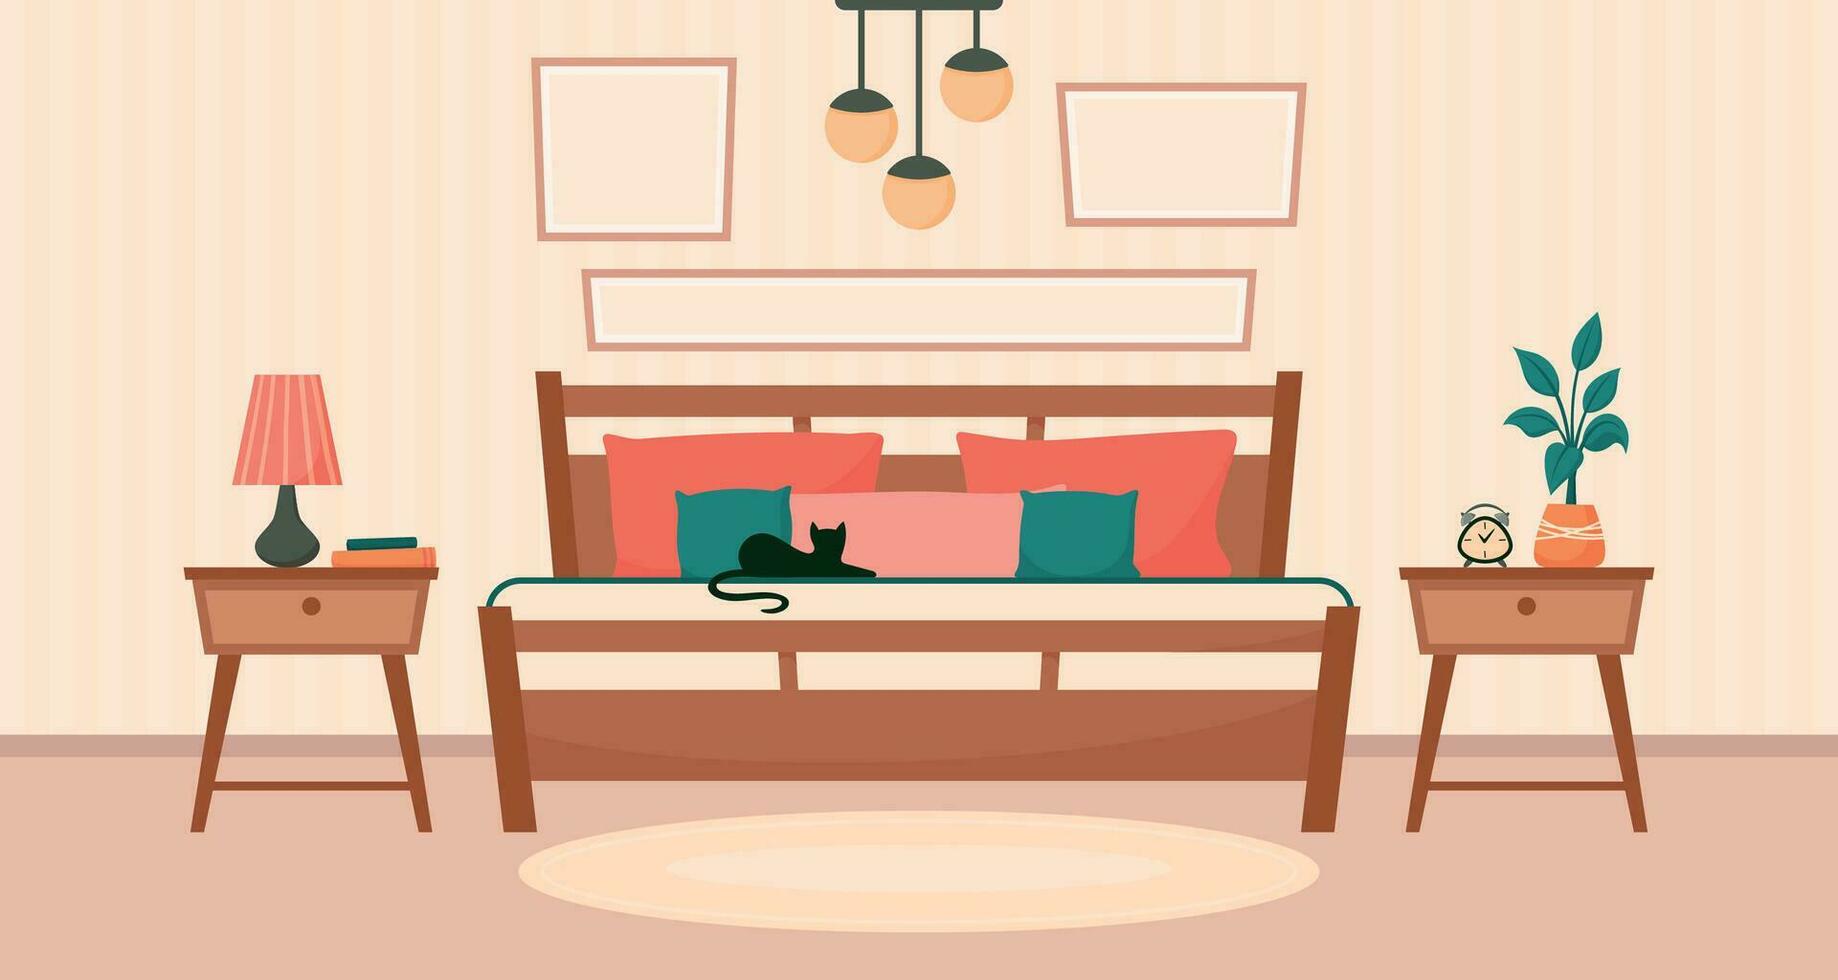 mysigt interiör sovrum med säng, bedside bord, larm klocka, blomkruka, hängsmycke ljus. vektor platt bakgrund mall illustration